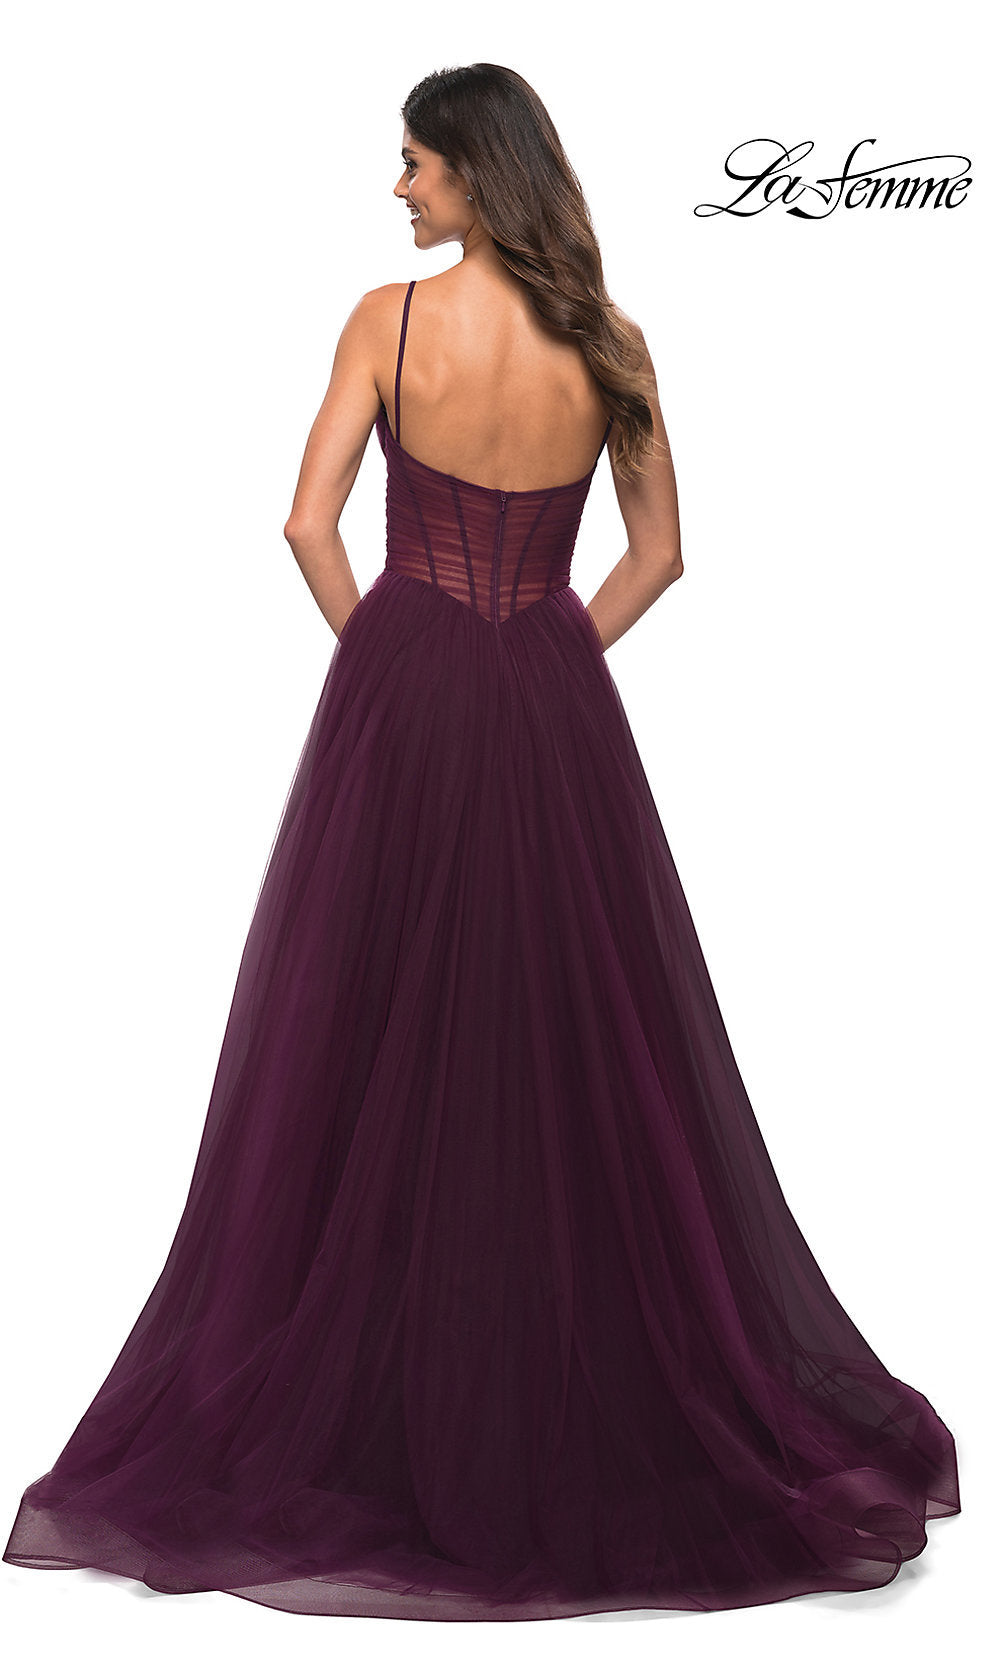  Sheer-Waist Long A-Line Prom Dress by La Femme